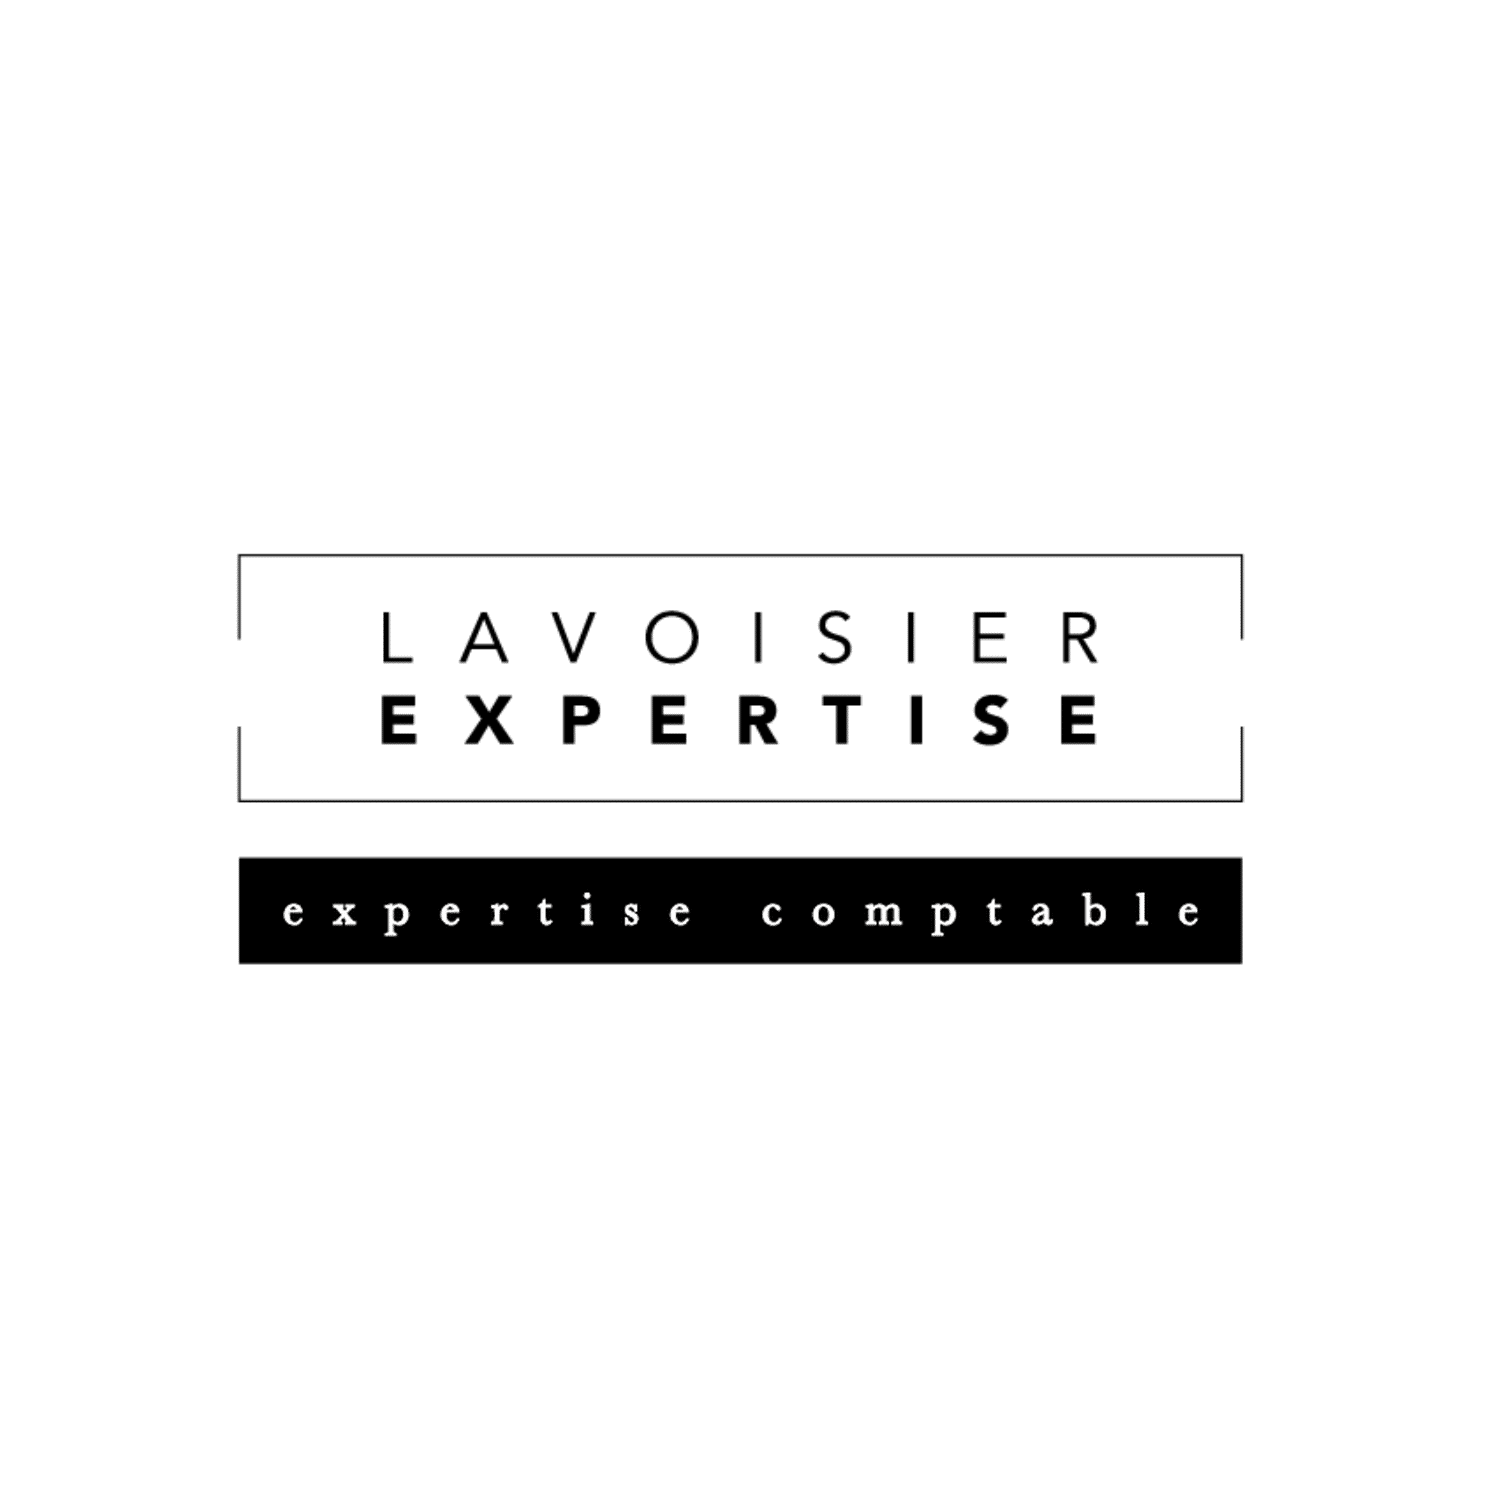 Lavoisier Expertise